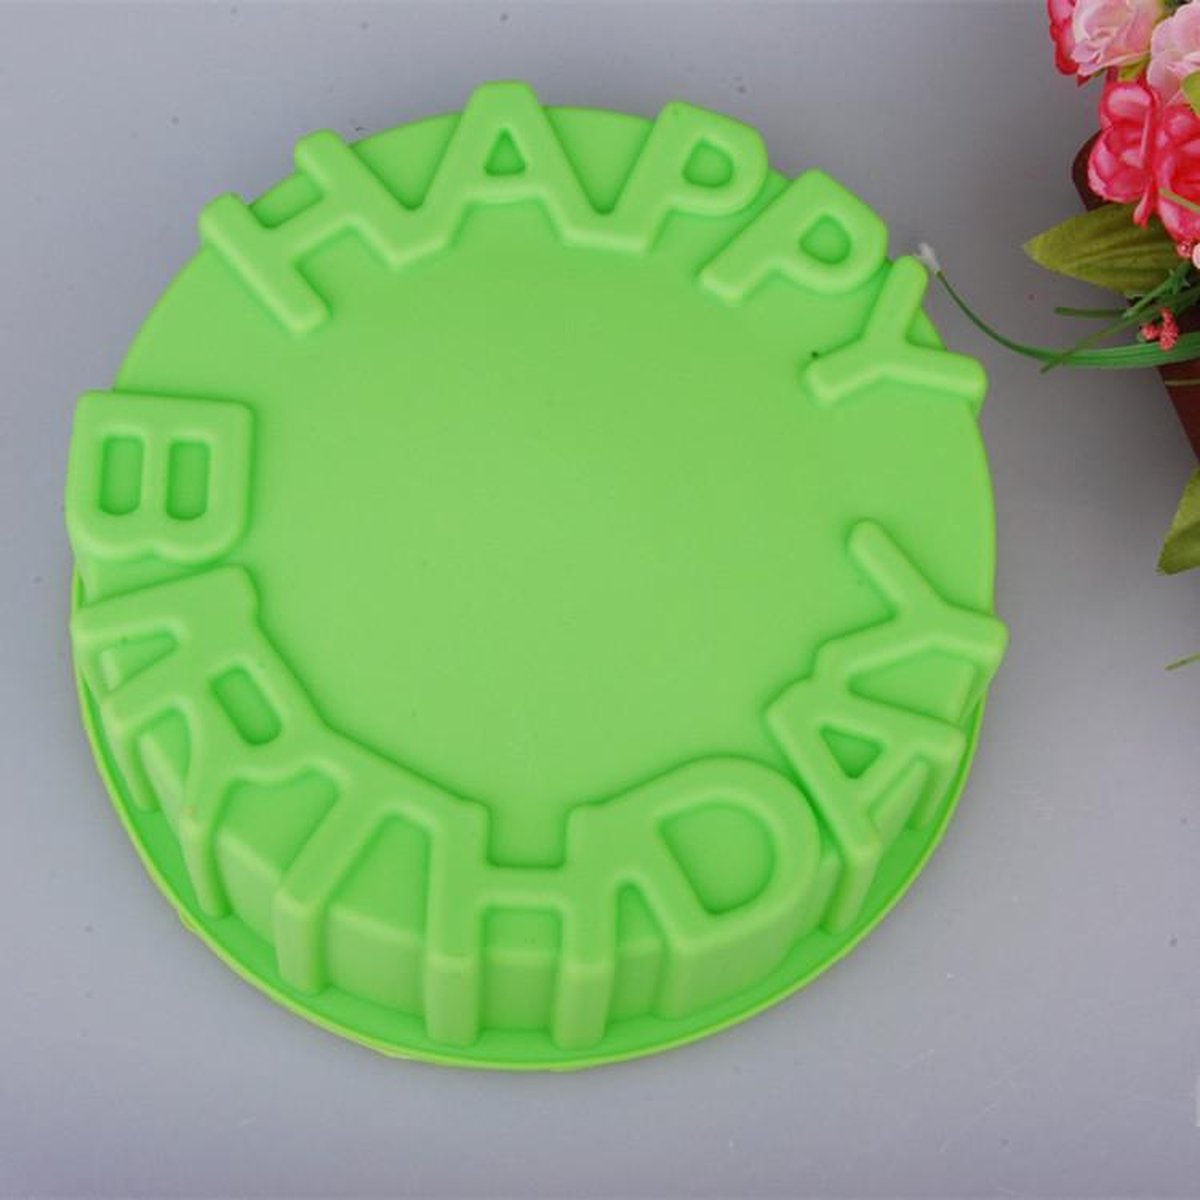 Happy Birthday - Verjaardags Taart vorm - 8-10 personen - inclusief taart cake snijder